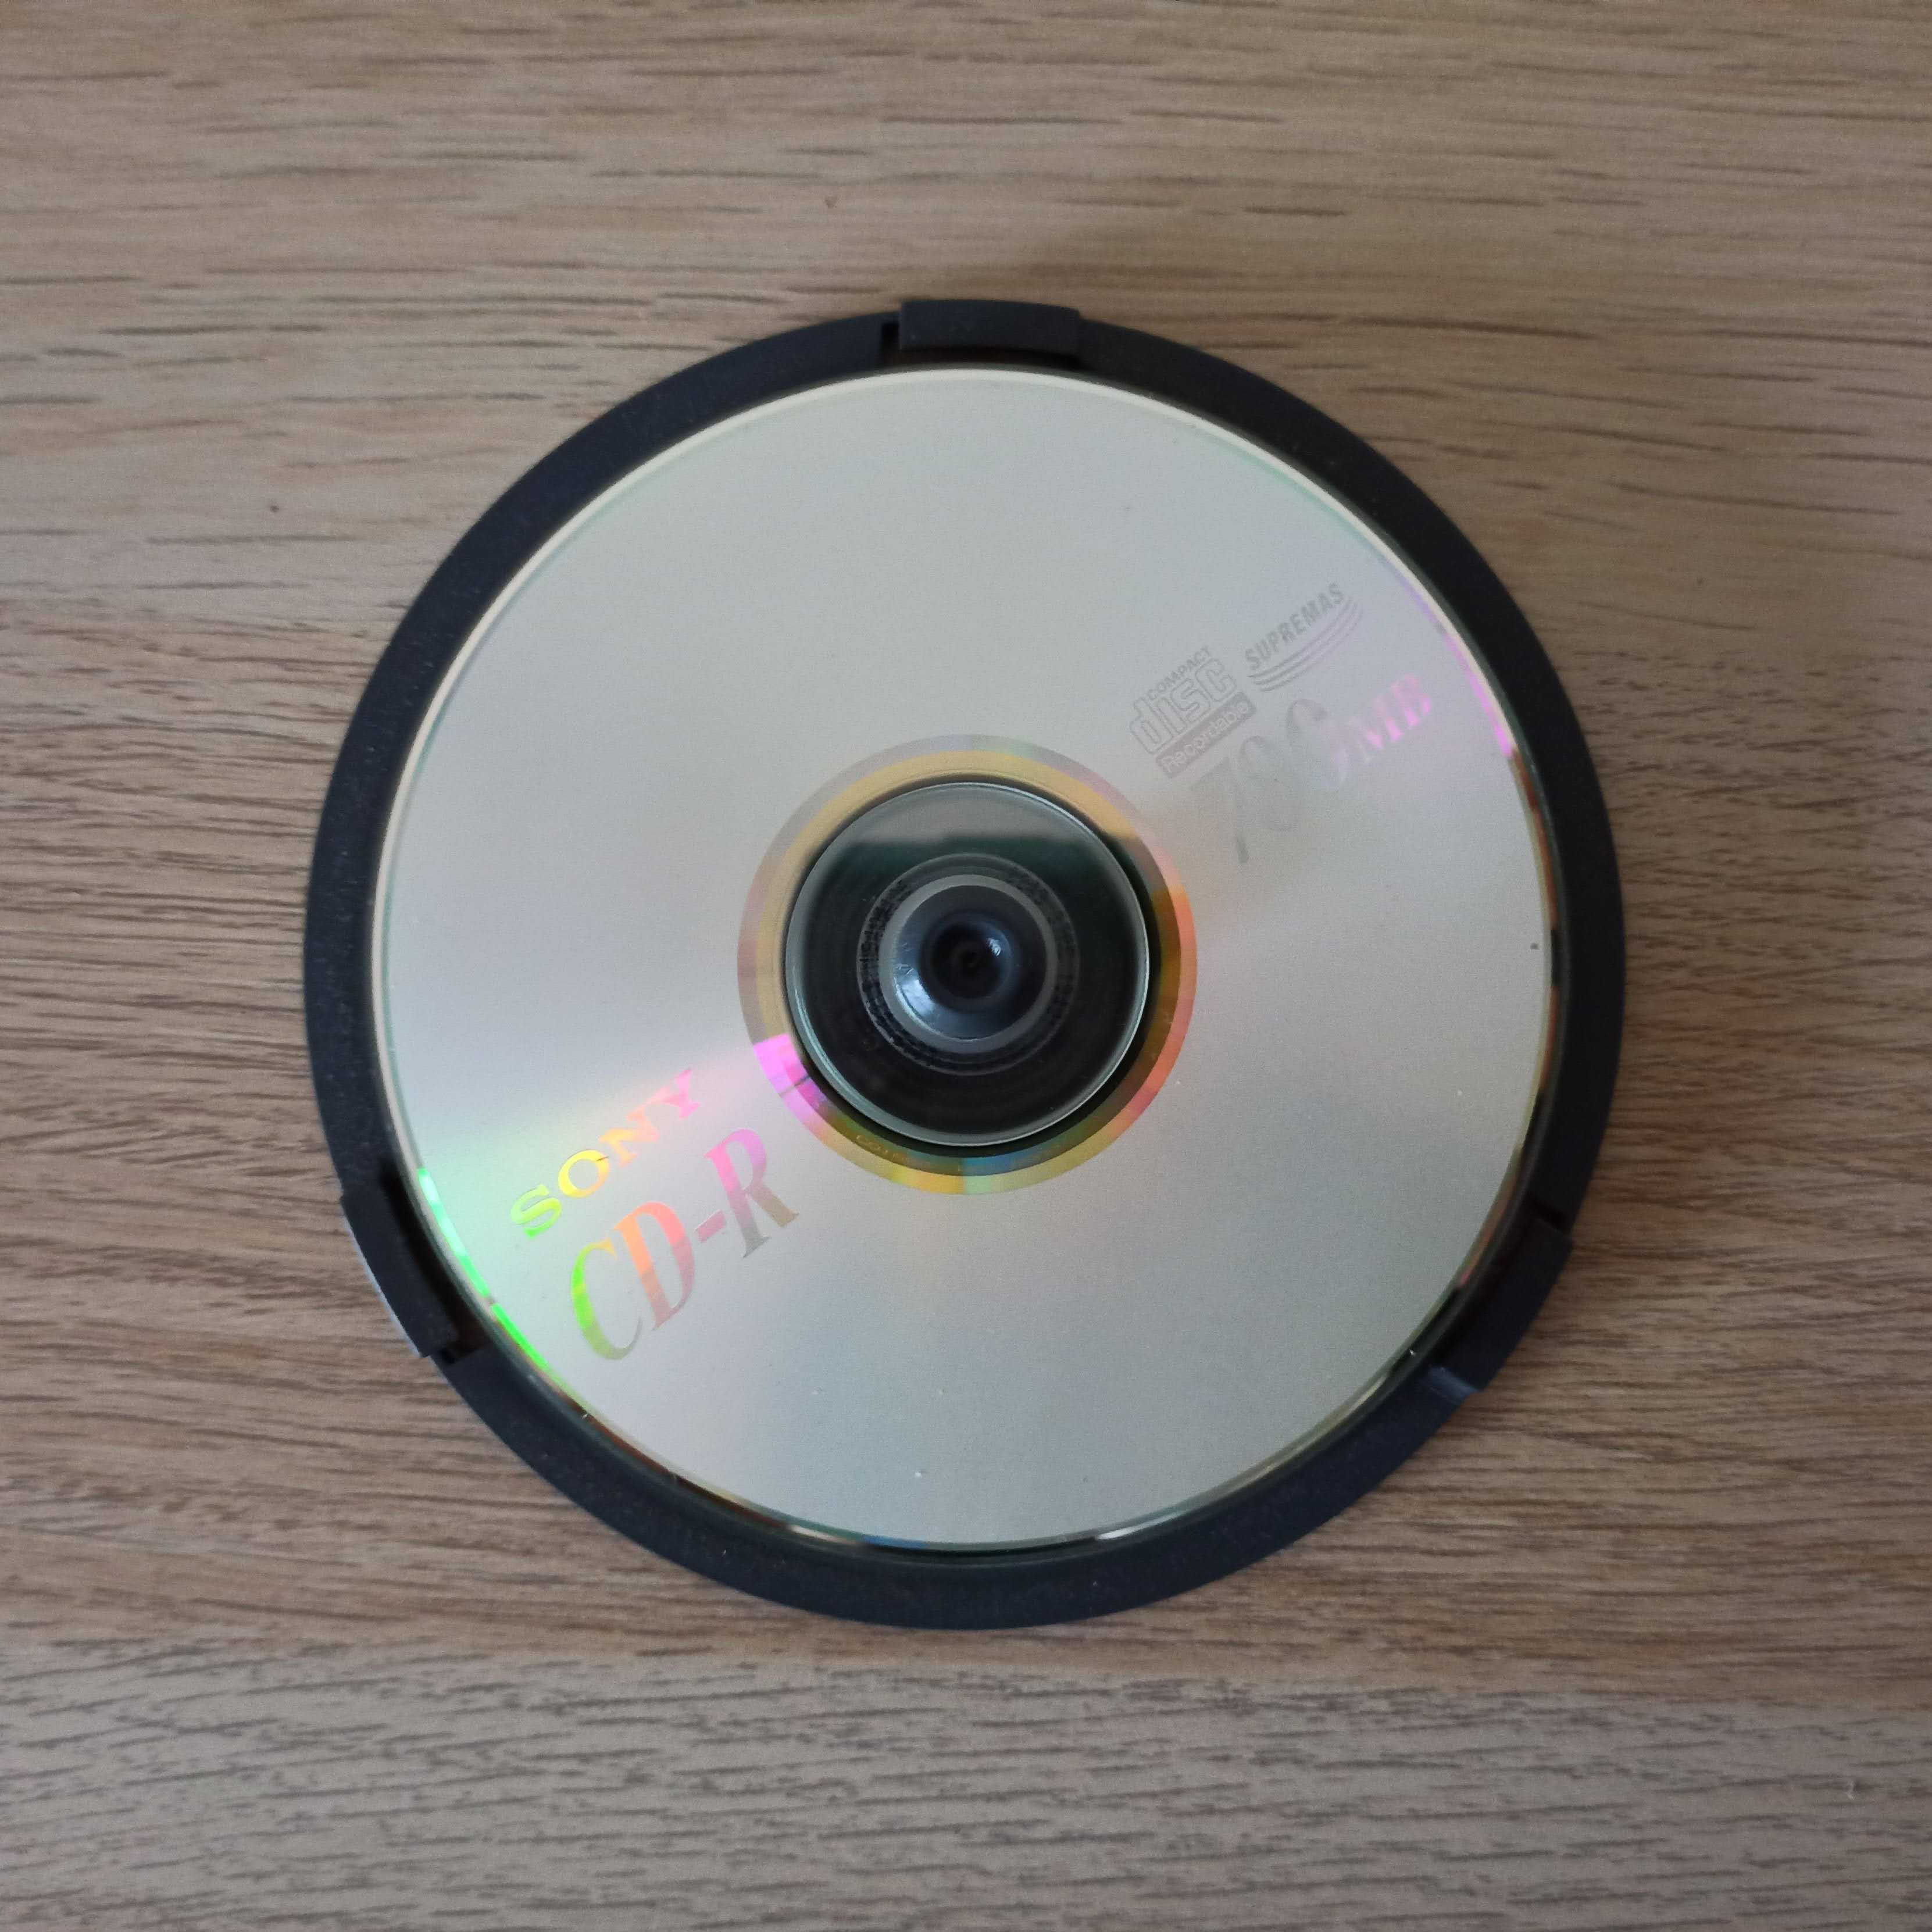 6 CDs-R Sony para gravar 700Mb